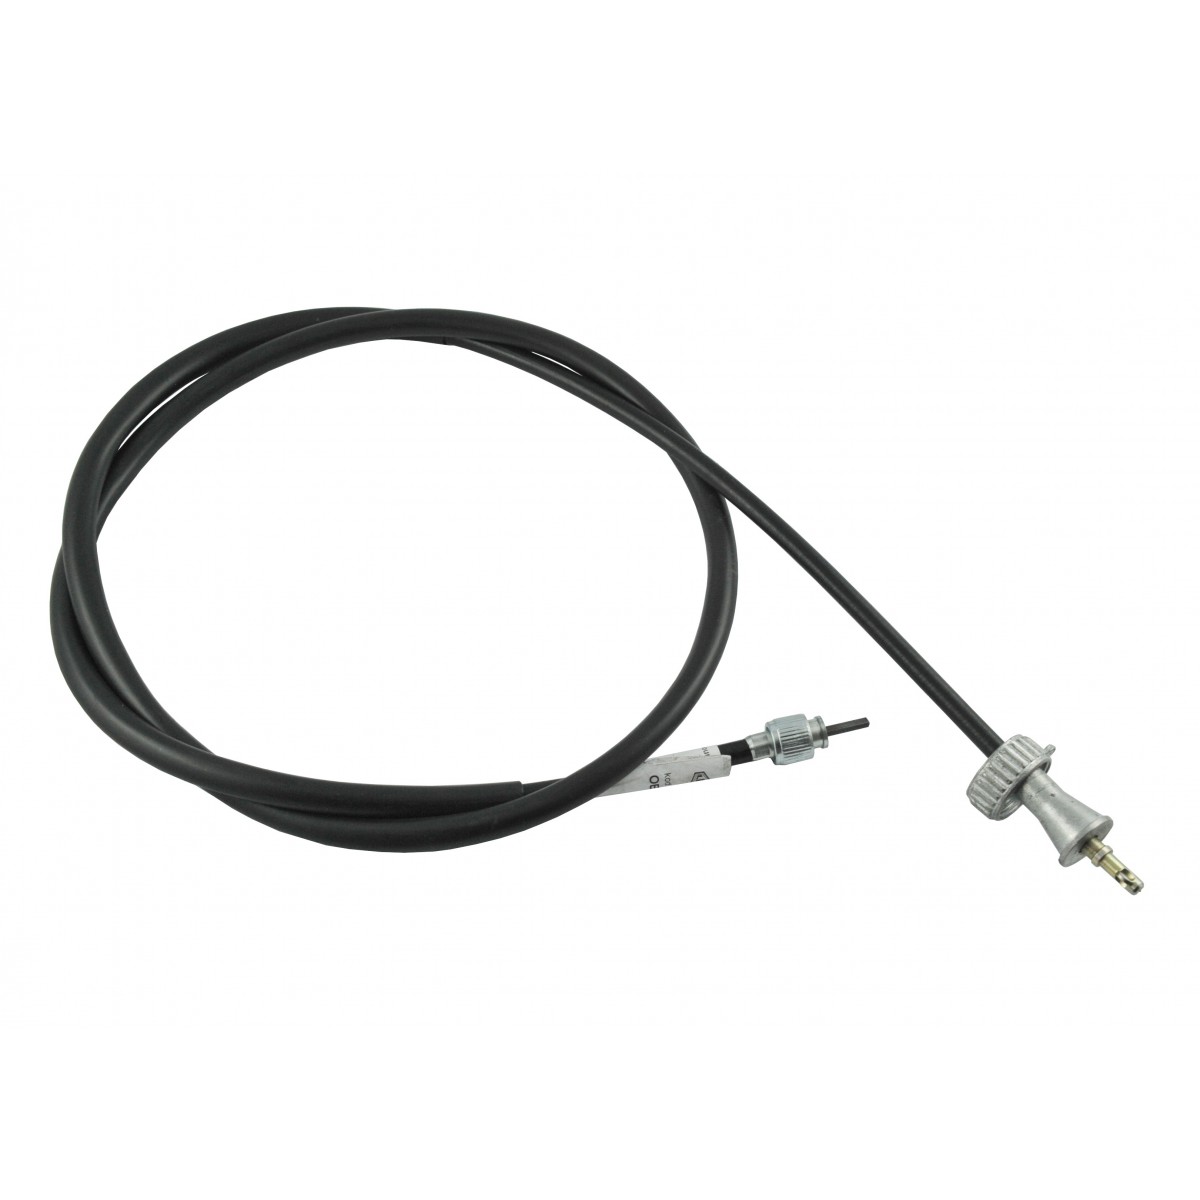 Cable medidor Iseki 1265/1300 mm